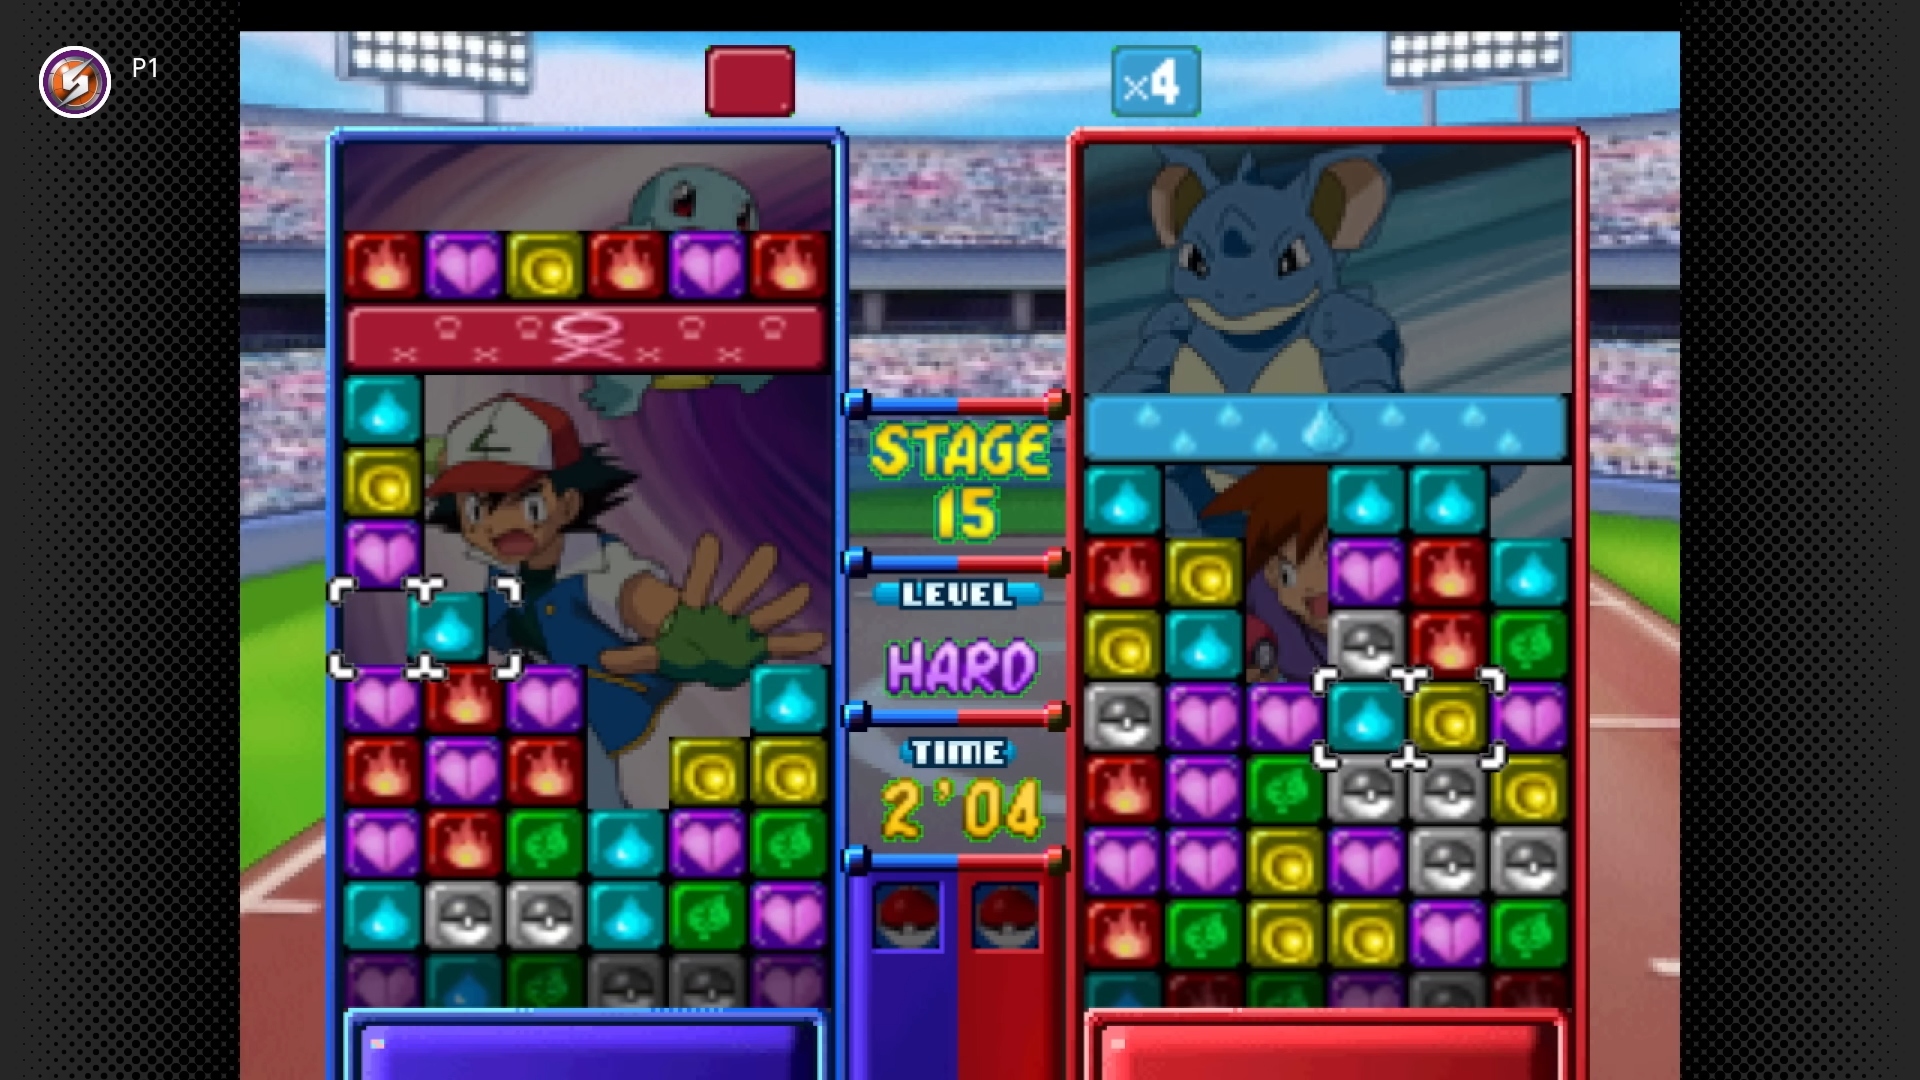 Pokémon Switch games: Pokémon Puzzle League. Image shows a competitive game of Puzzle League in progress. 